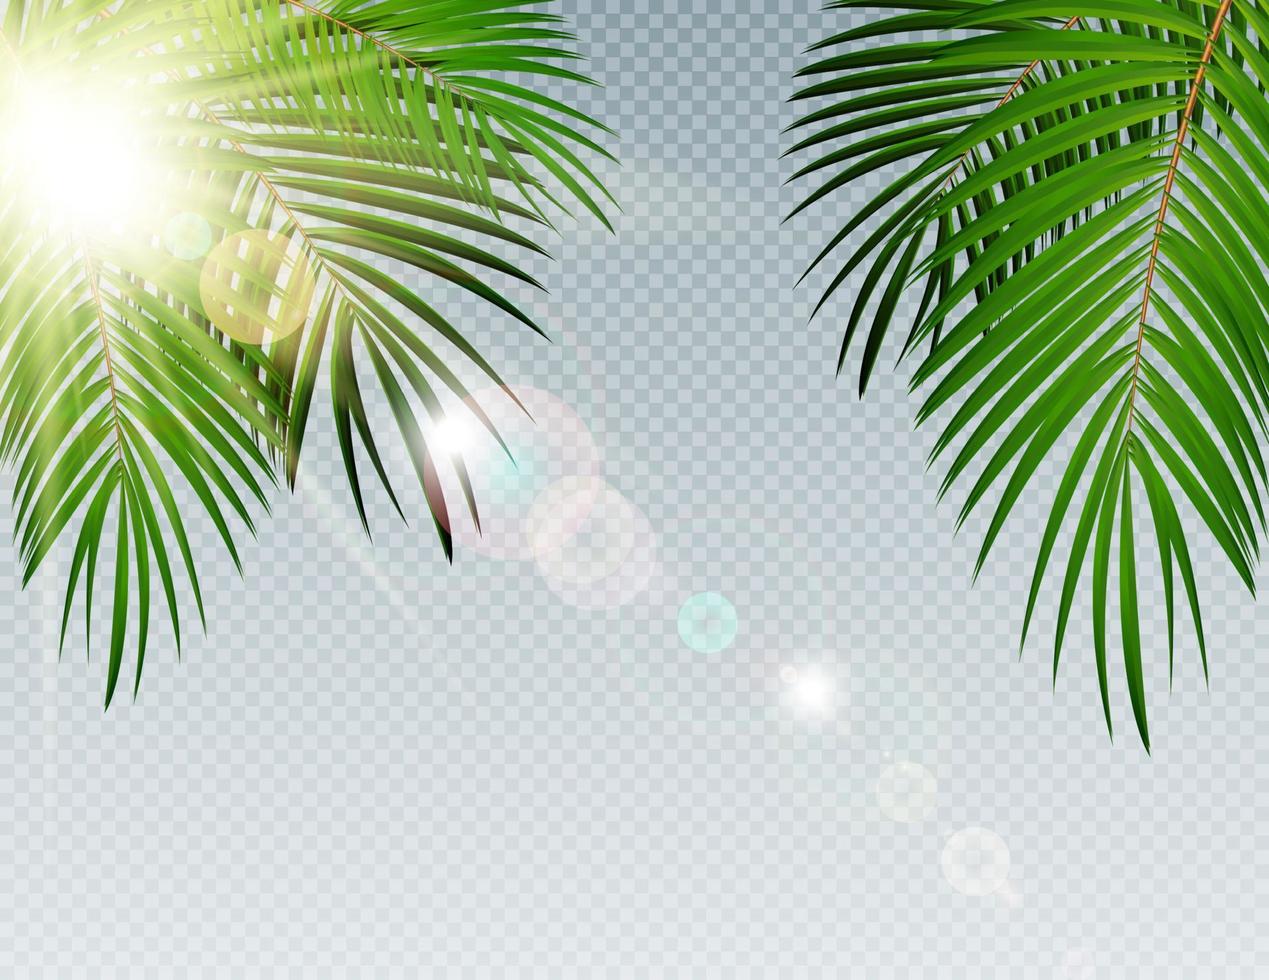 horario de verano hoja de palma con sol quemado en la ilustración de fondo de vector transparente